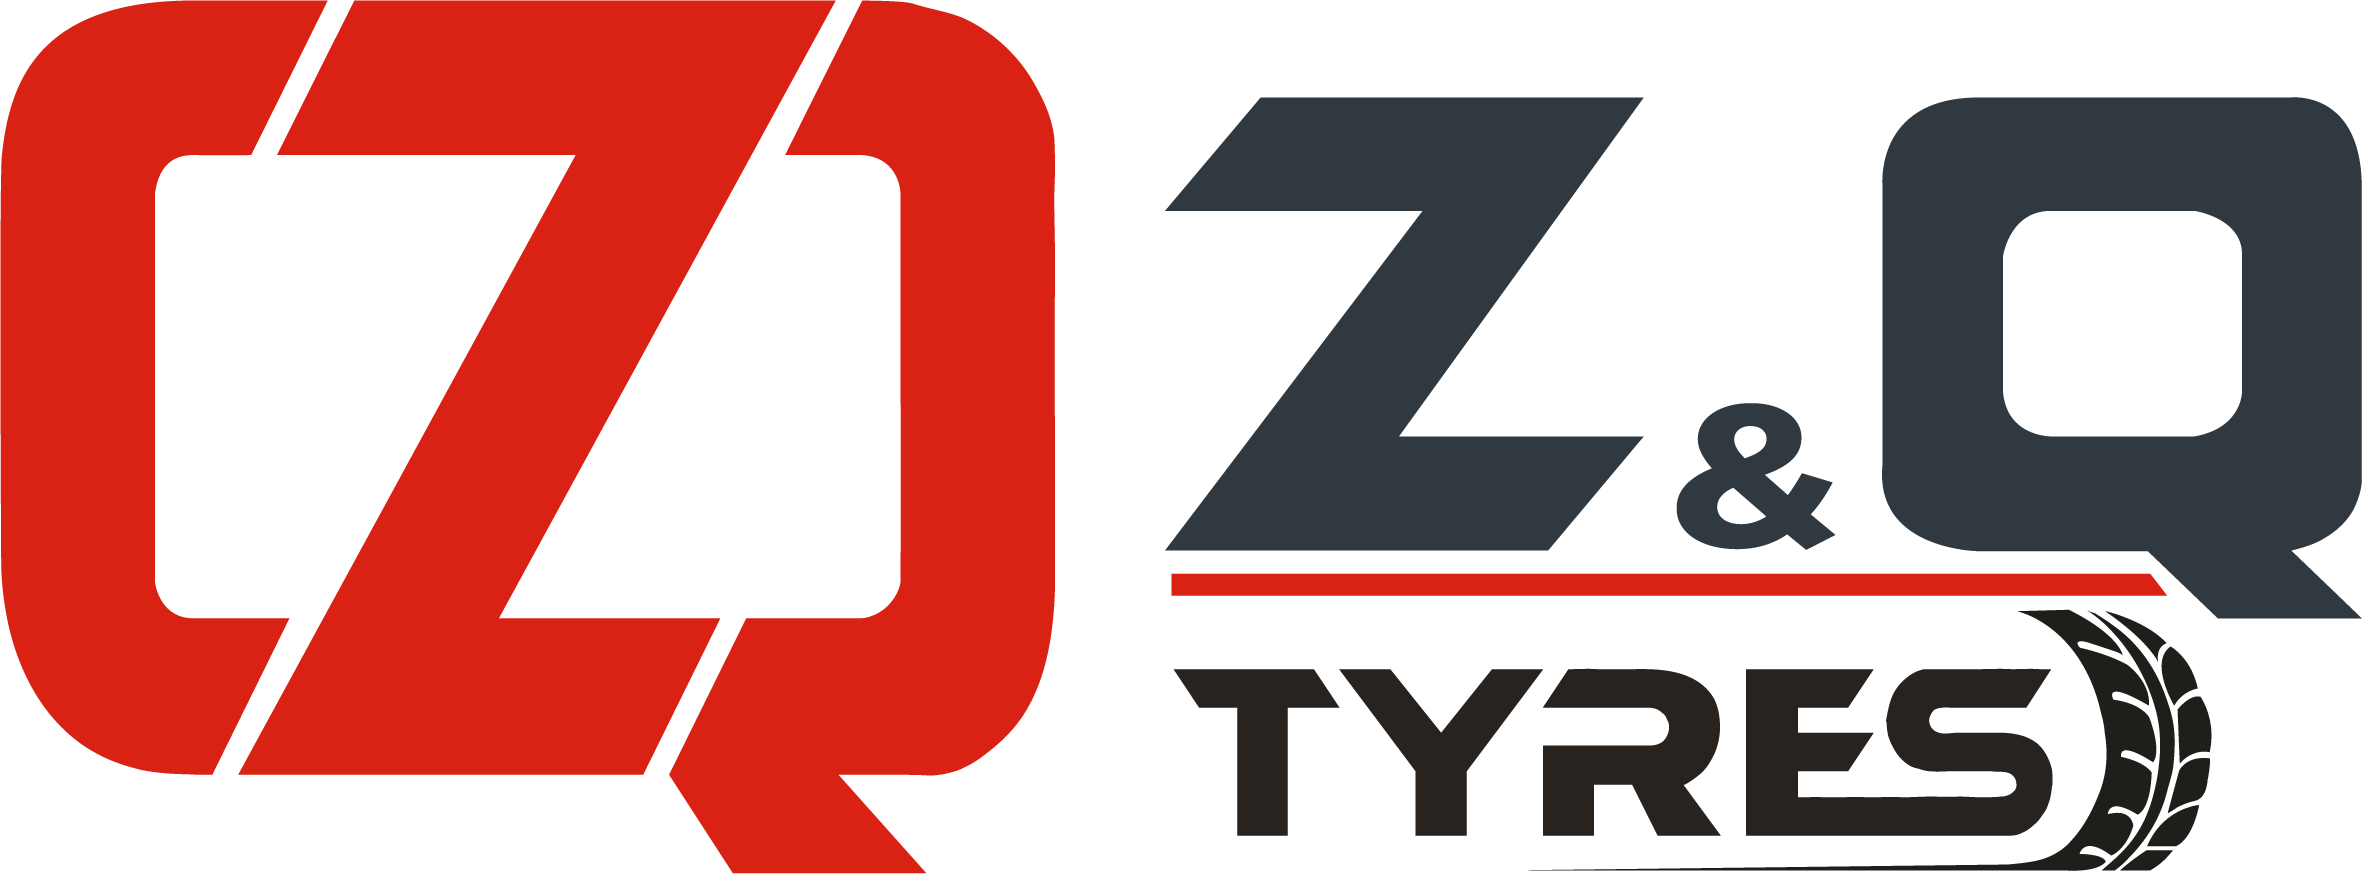 ZQ TYRES - Landwirtschaftsreifen, Industriereifen und Baumaschinenreifen | Reifenaufbereitung, Warm- und Kaltrunderneuerung und Zubehör